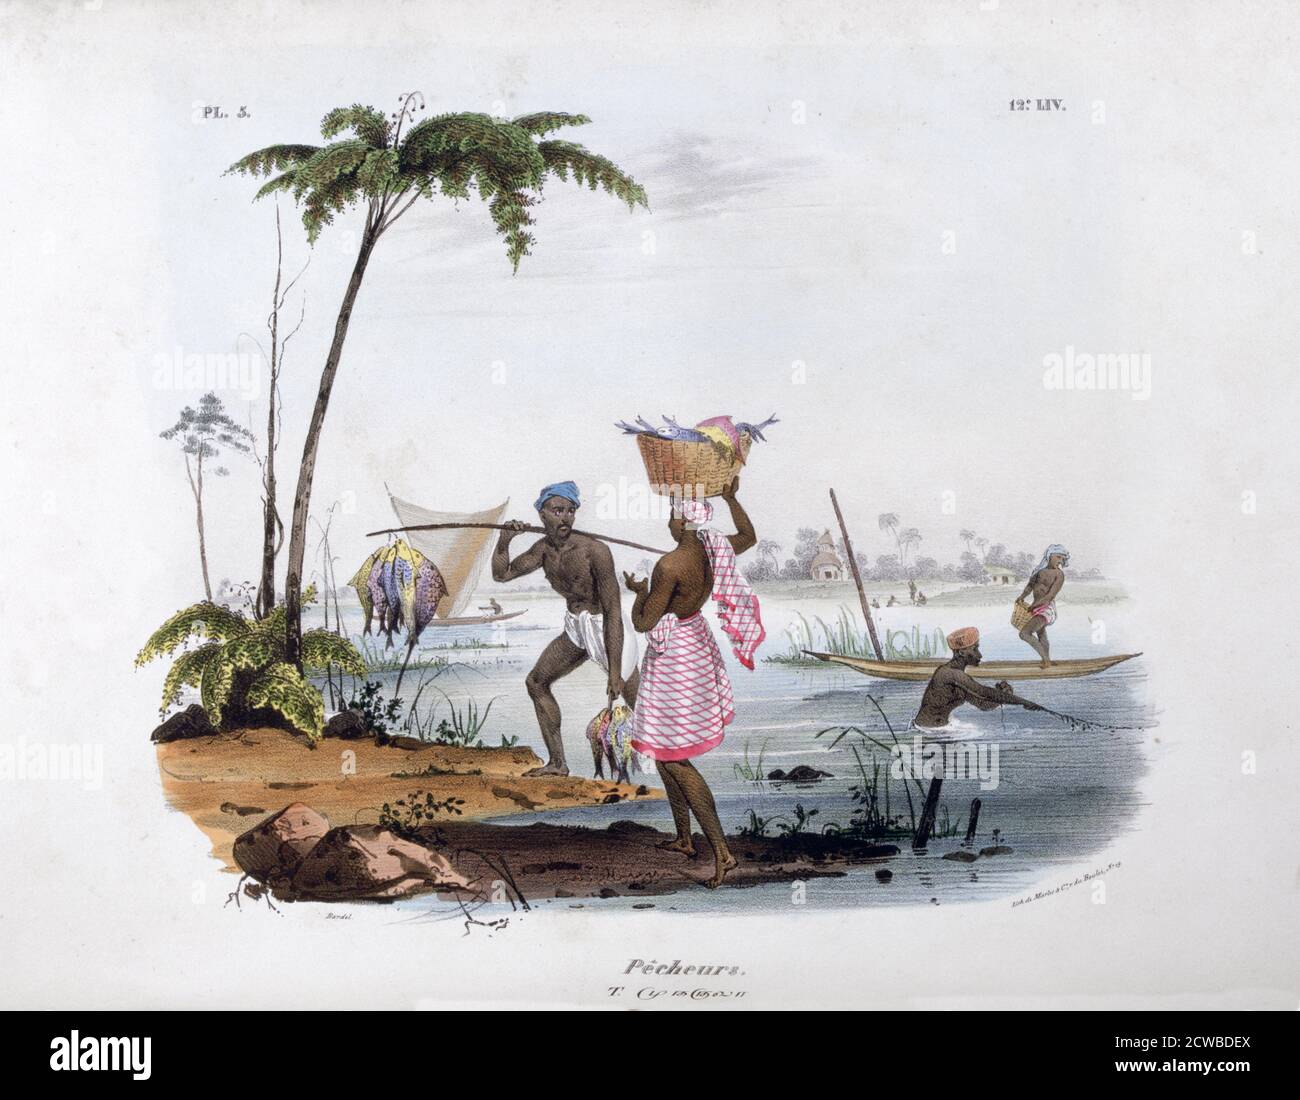 Fisherman', 1828. Una stampa di l'Inde Francaise, 1828. Trovato nella collezione di Jean Claude Carriere. Dell'artista francese Jean Henri Marlet. Foto Stock